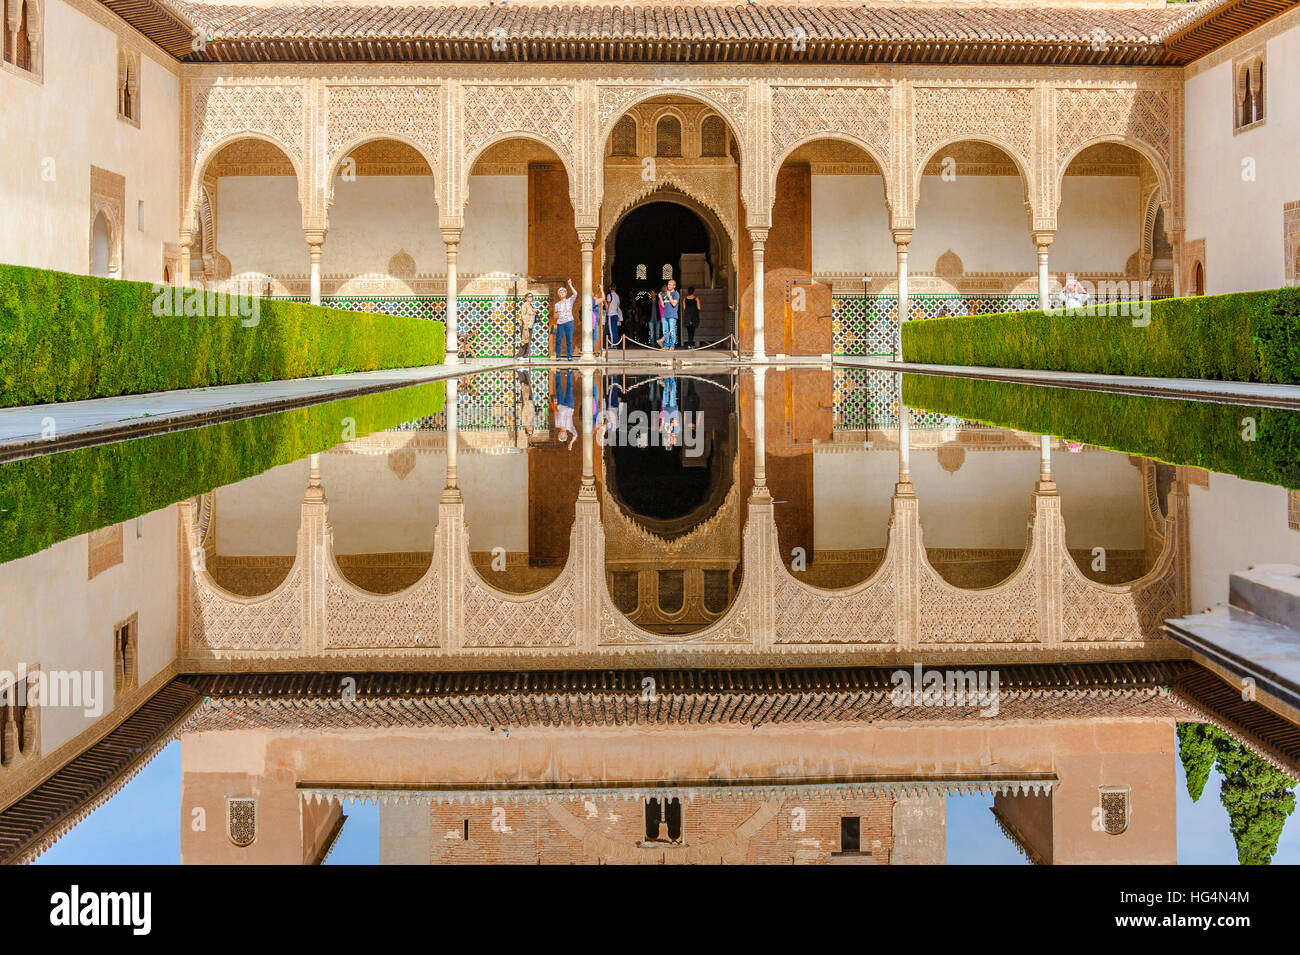 Patio de Los Arrayanes, Hof des Myrthen mit Reflexion im Teich, Innercourt der Nasriden Palast Alhambra in Granada, Andalusien, Spanien Stockfoto